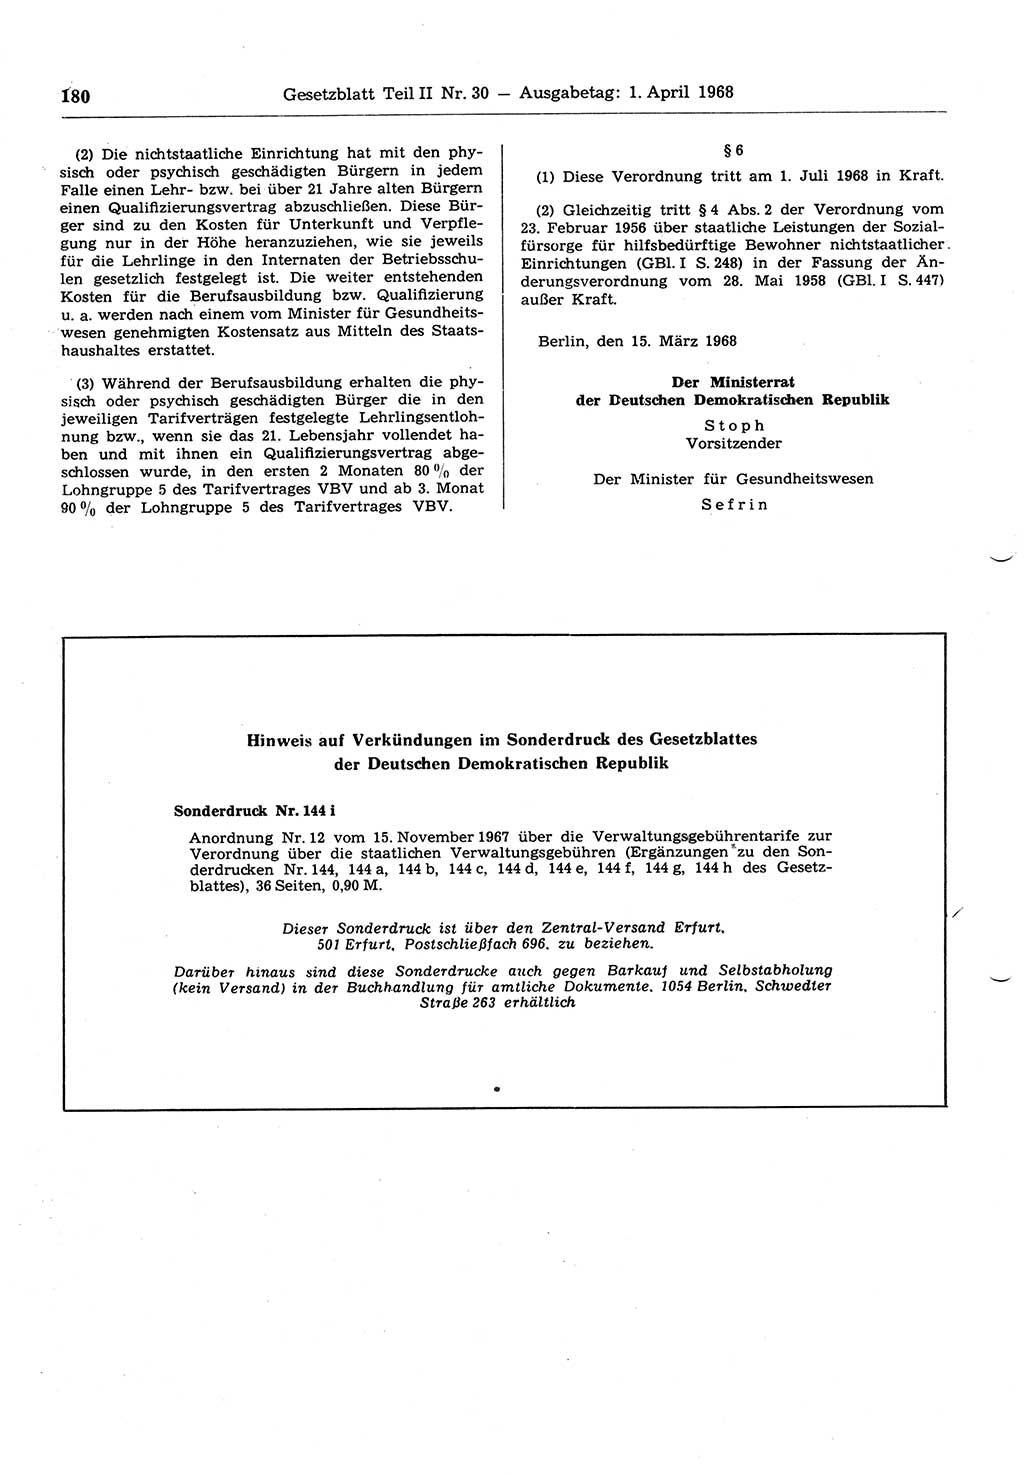 Gesetzblatt (GBl.) der Deutschen Demokratischen Republik (DDR) Teil ⅠⅠ 1968, Seite 180 (GBl. DDR ⅠⅠ 1968, S. 180)